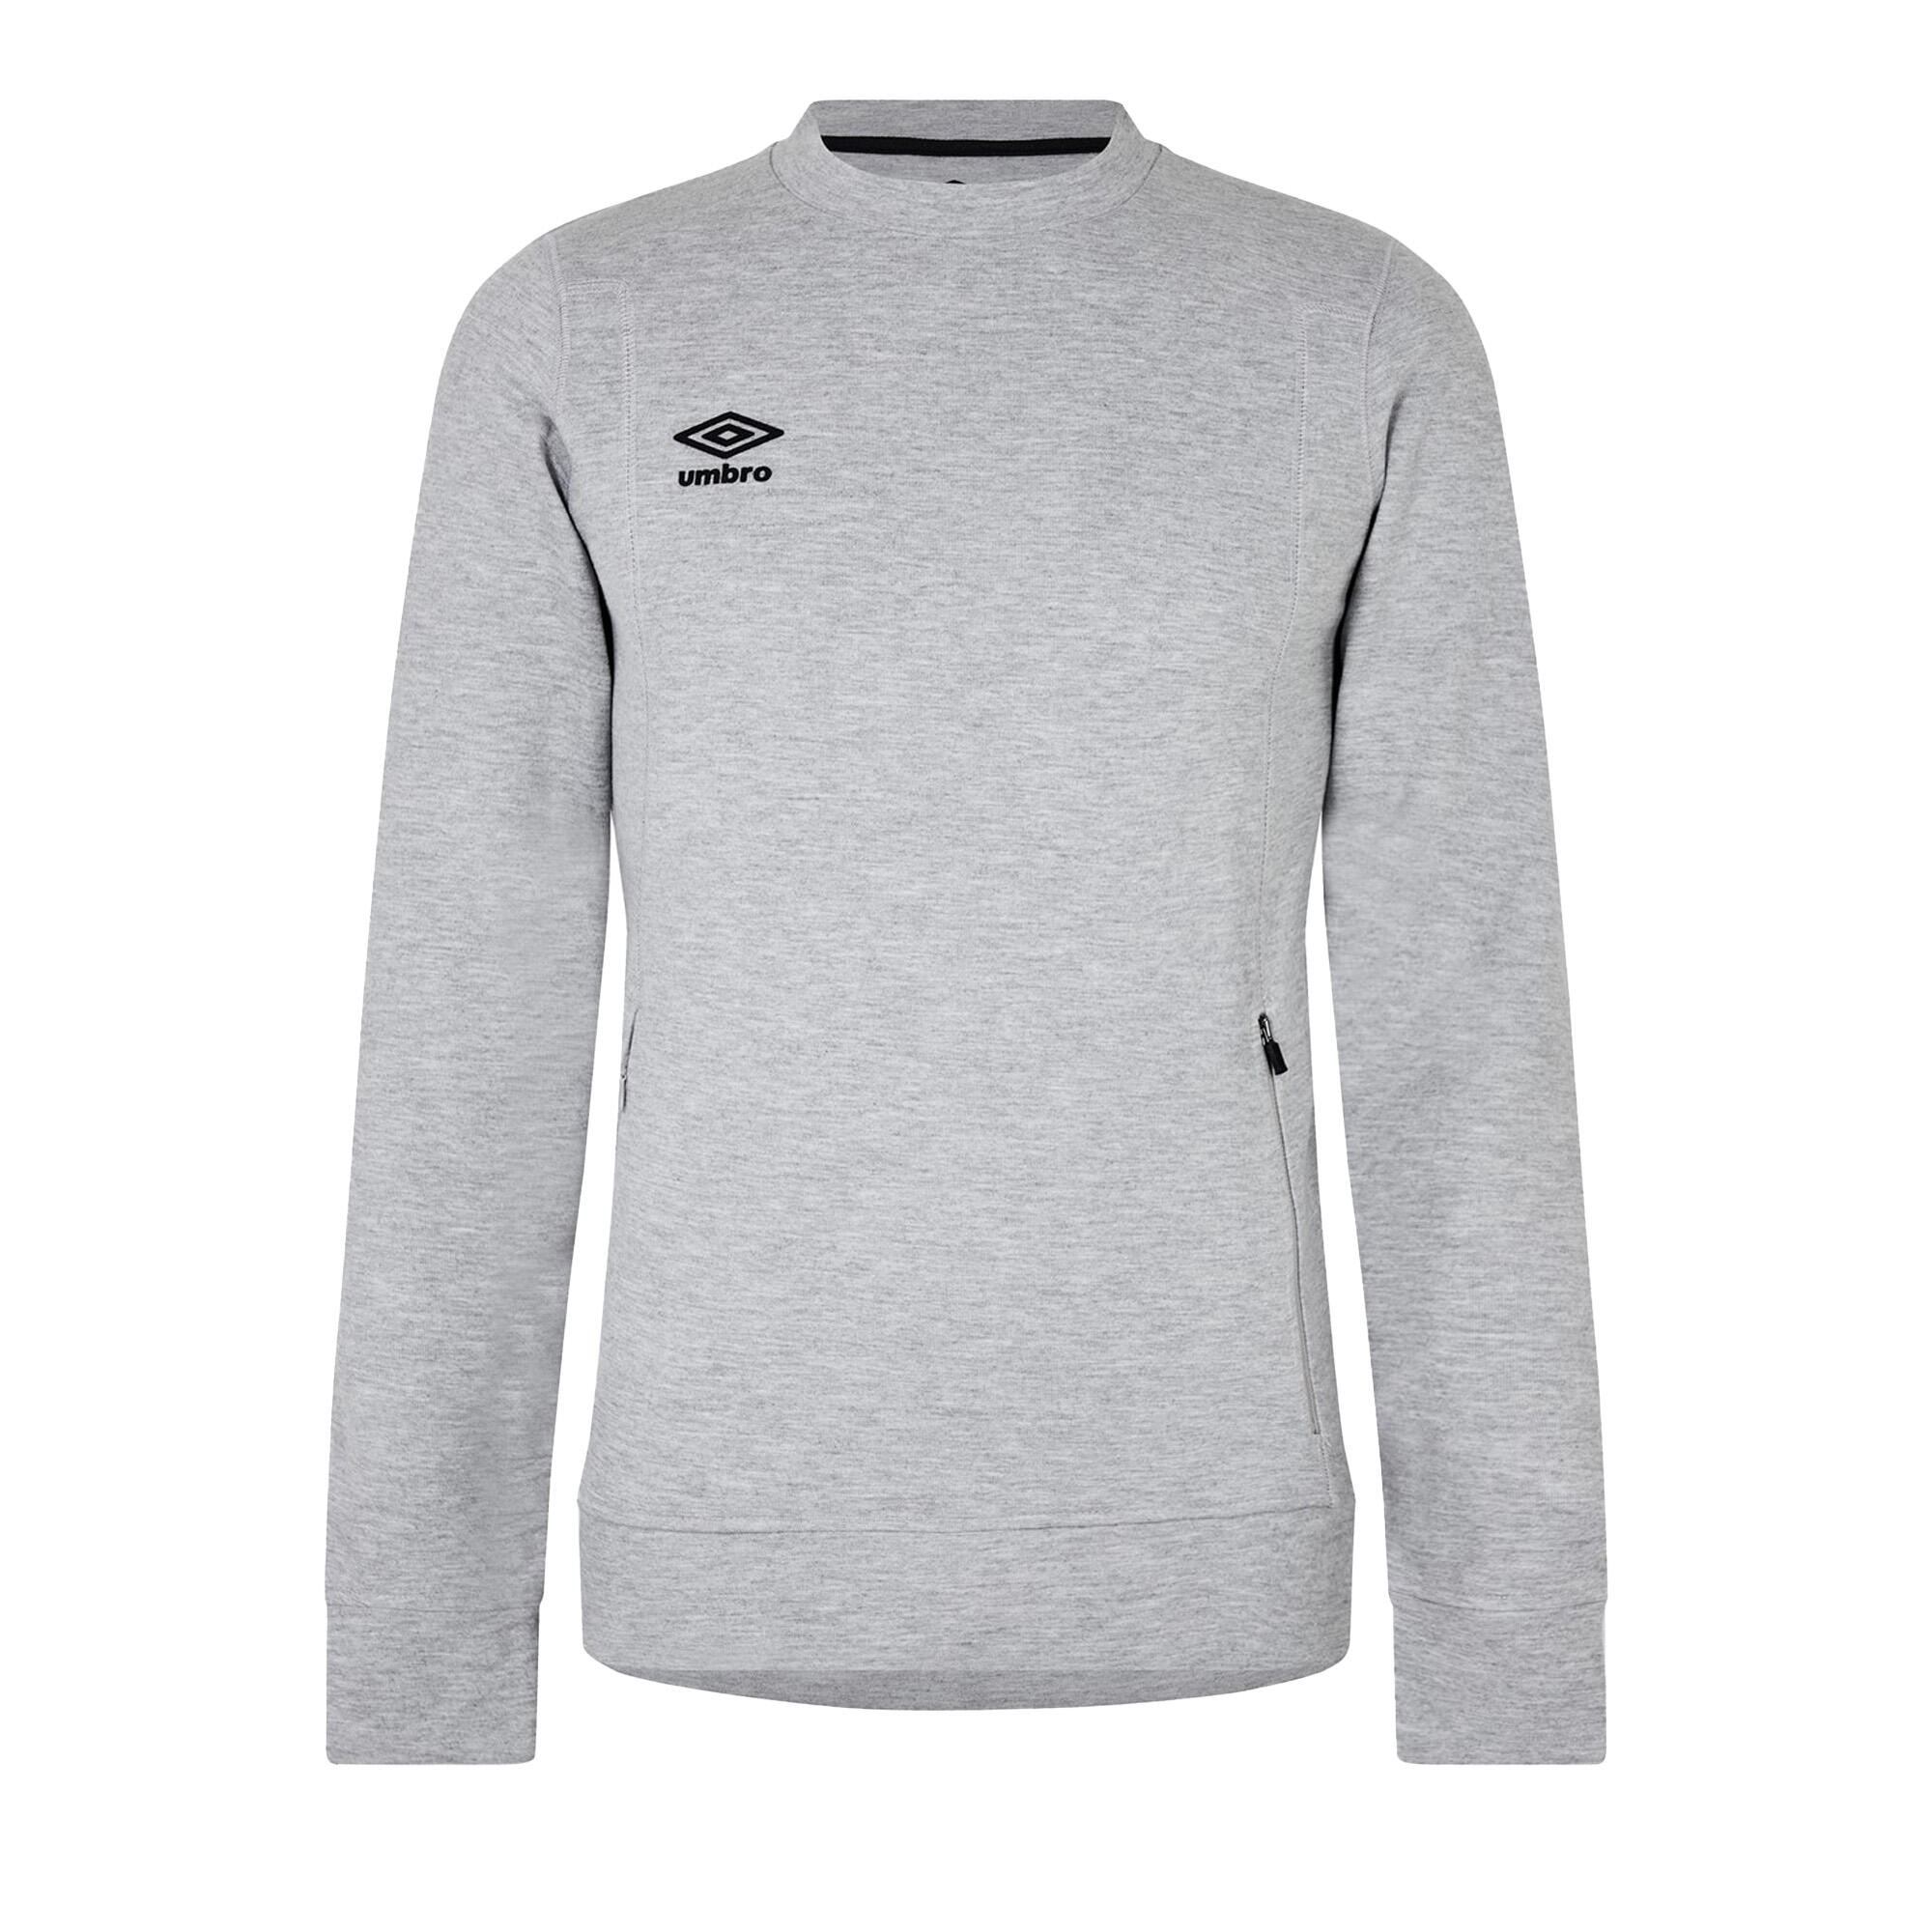 UMBRO Boys Pro Fleece Sweatshirt (Grey Marl/Black)